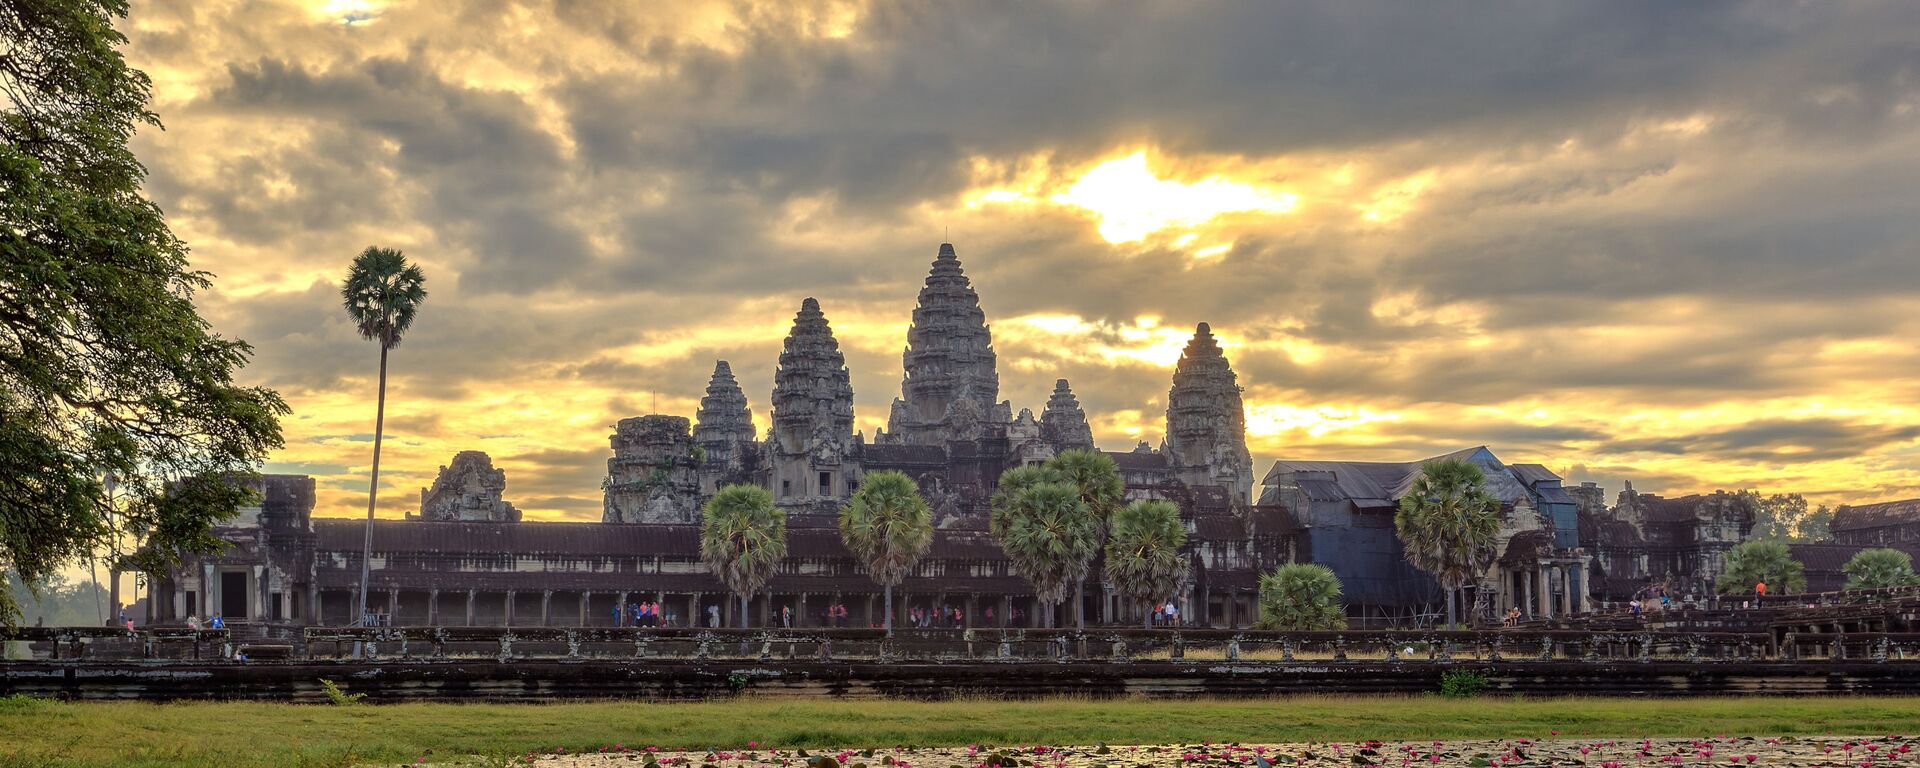 Ngôi đền cổ nổi tiếng thế giới Angkor Wat. - Sputnik Việt Nam, 1920, 02.12.2019